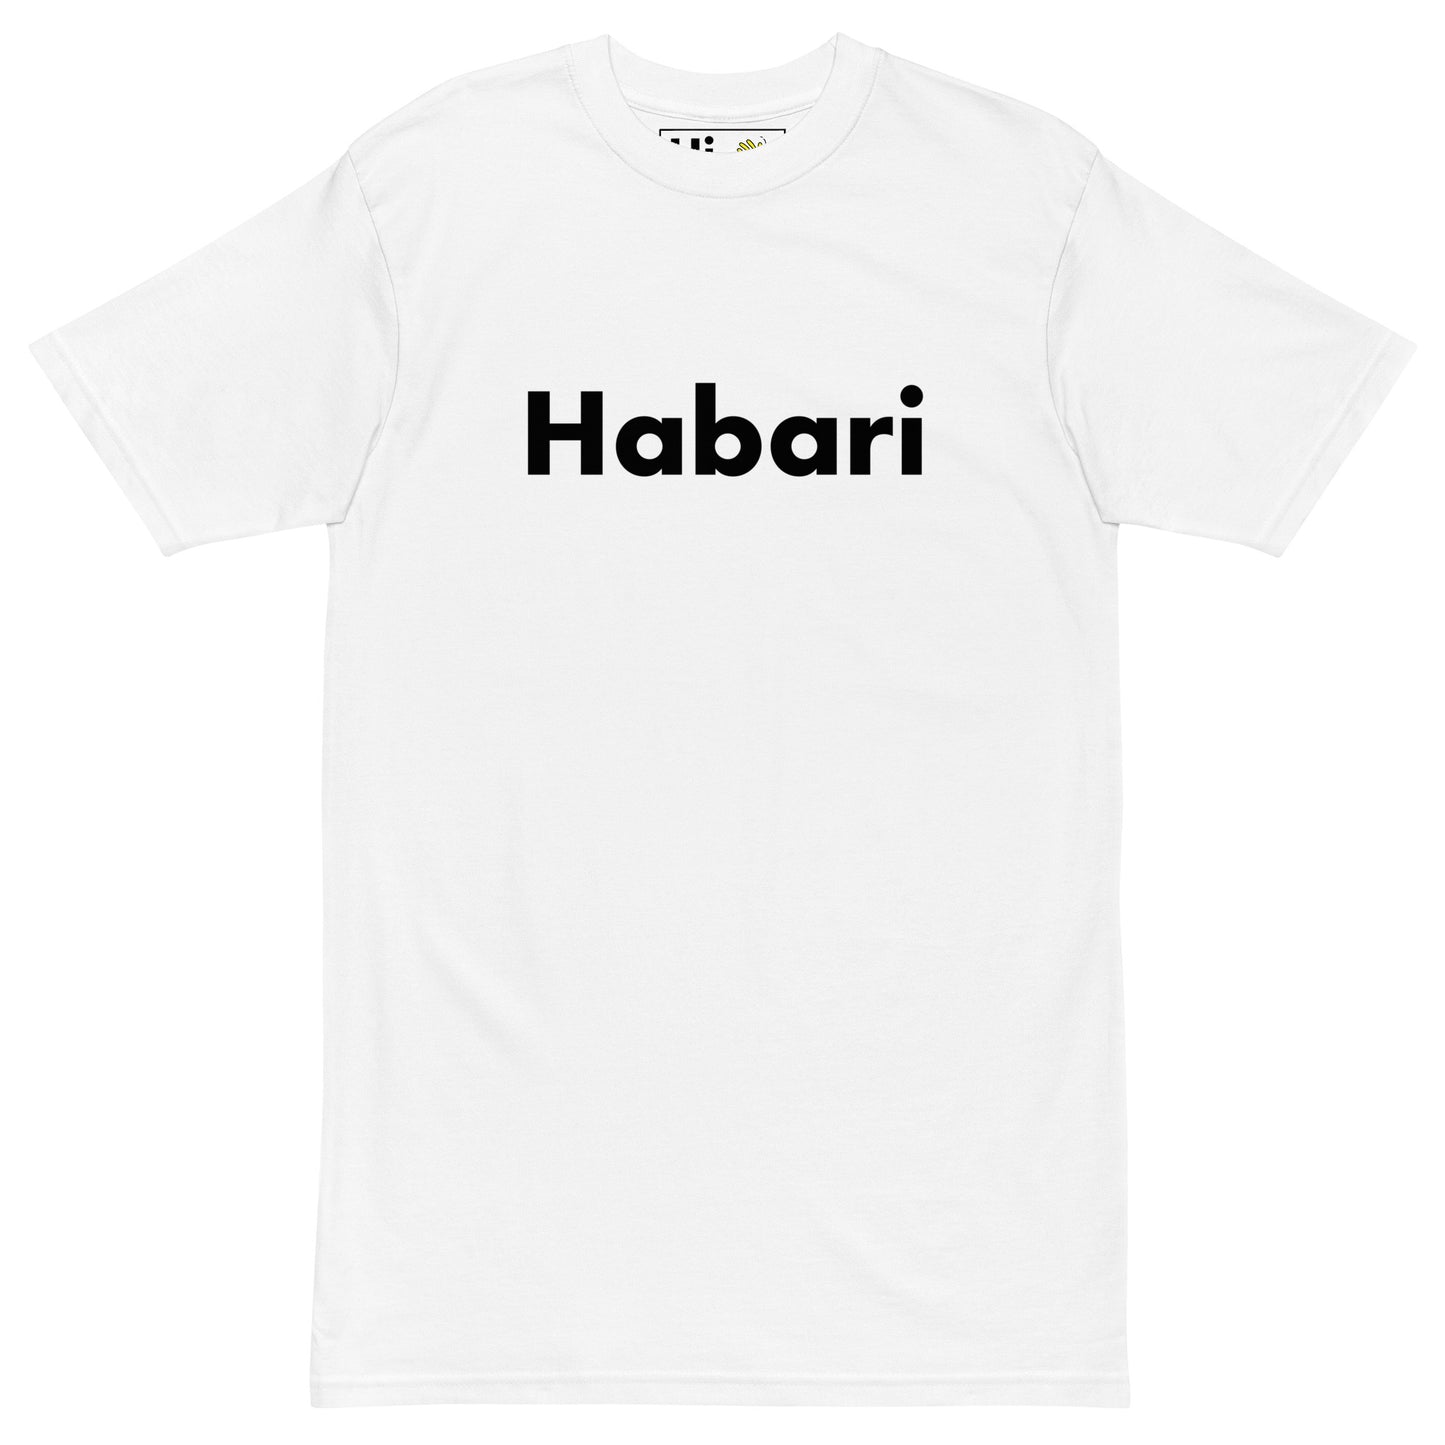 Hi Habari Swahili